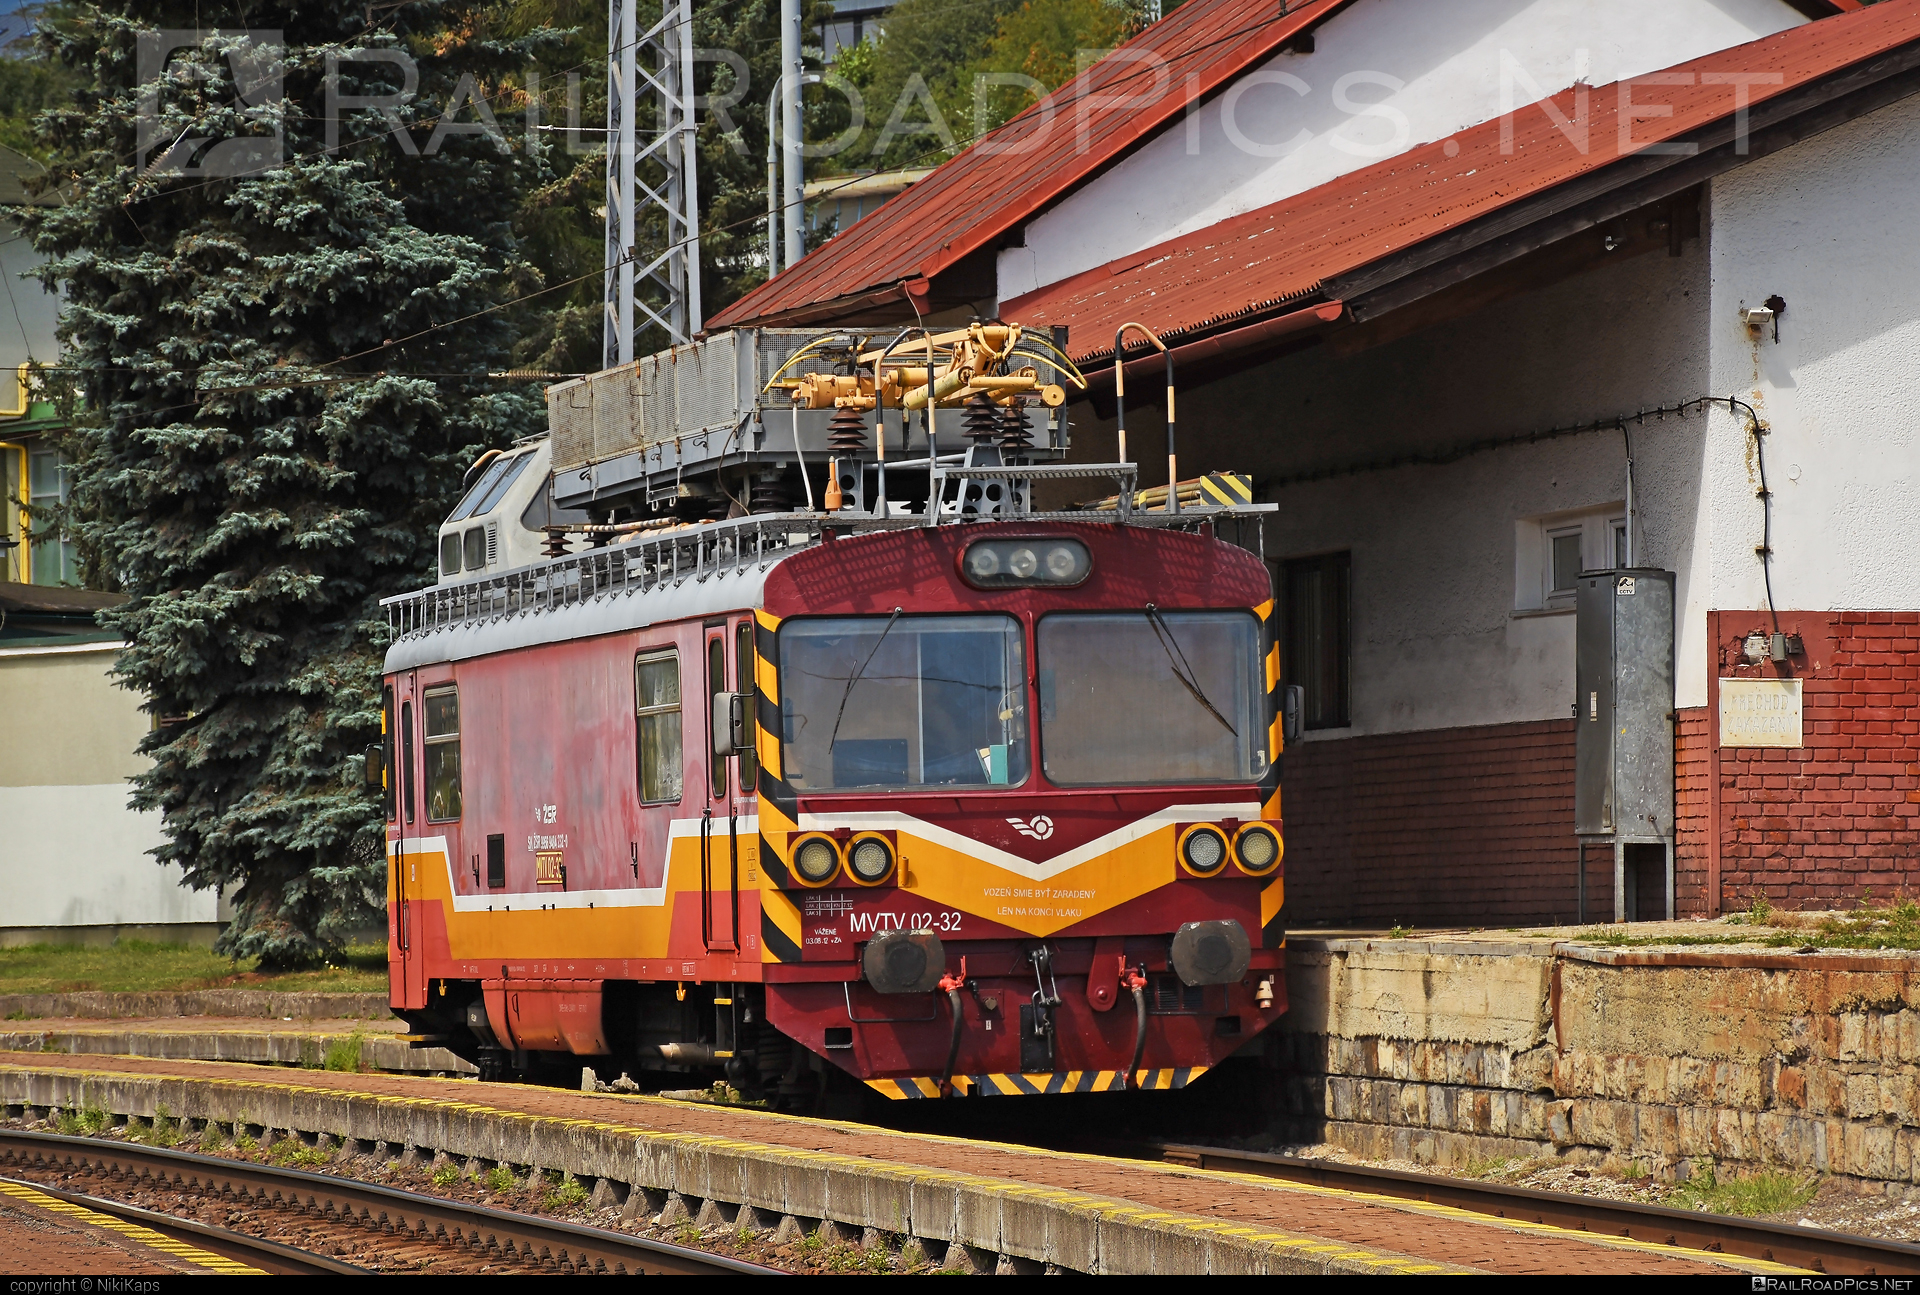 Vagónka Studénka MVTV 02 - MVTV 02-32 operated by Železnice Slovenskej Republiky #locomotivemvtv #mvtv02 #mvtv2 #vagonkaStudenka #zelezniceslovenskejrepubliky #zsr